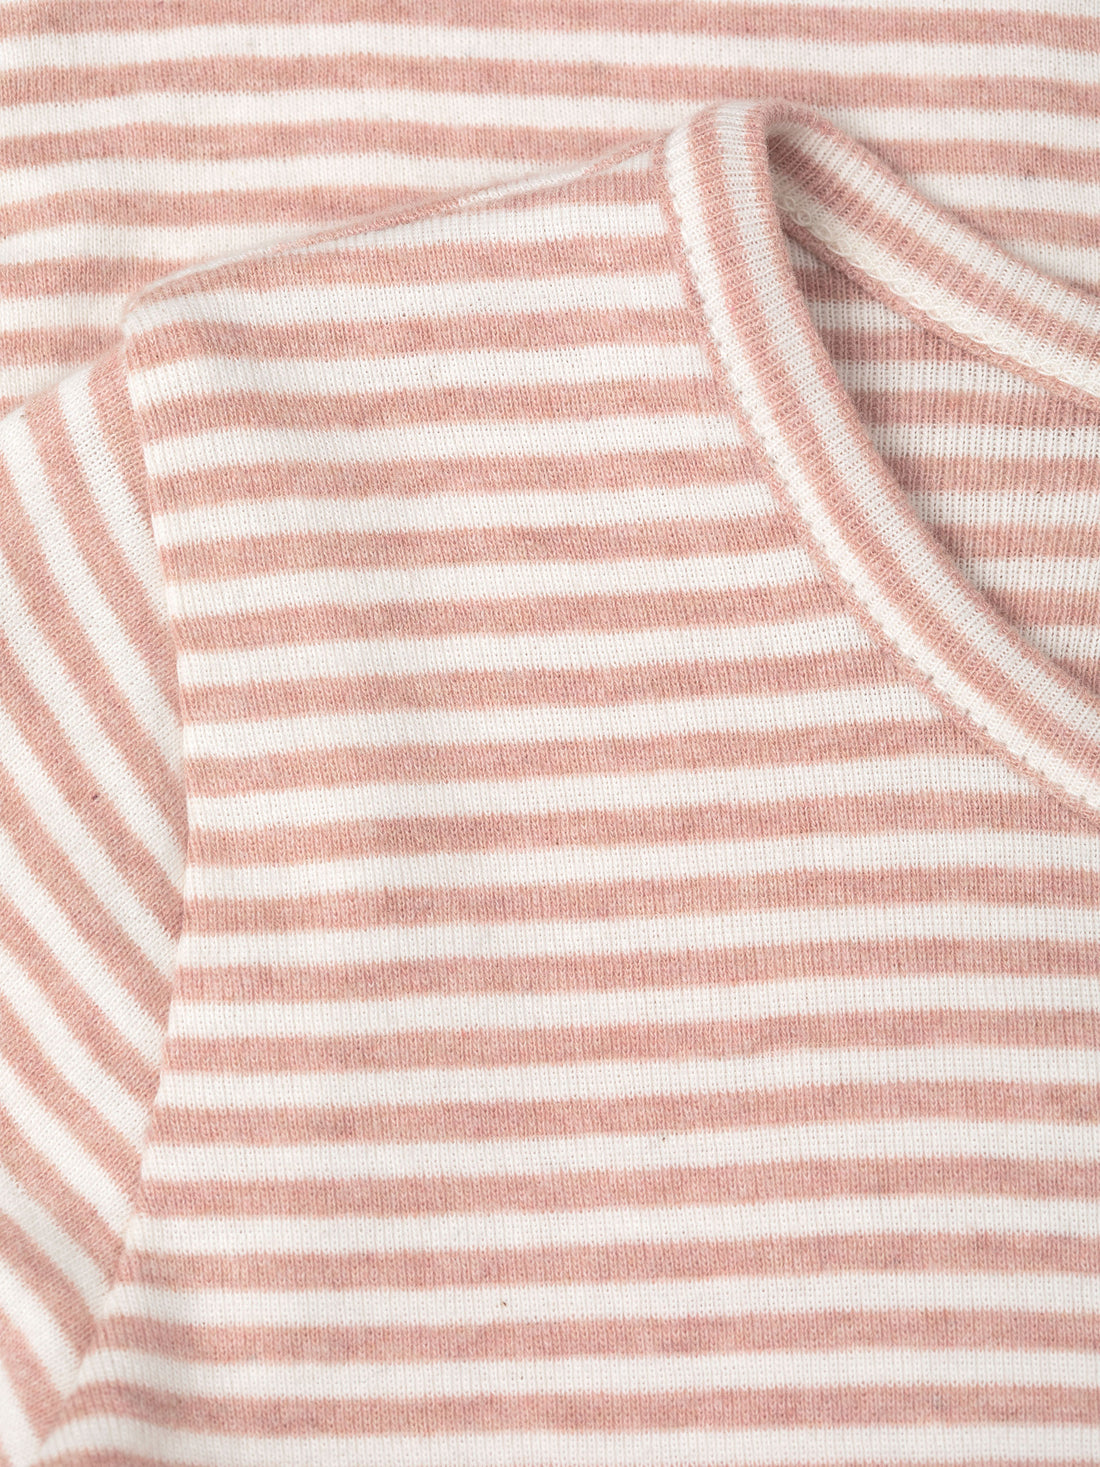 Serendipity - Kinder Shirt Streifen rosa-natur aus Biobaumwolle